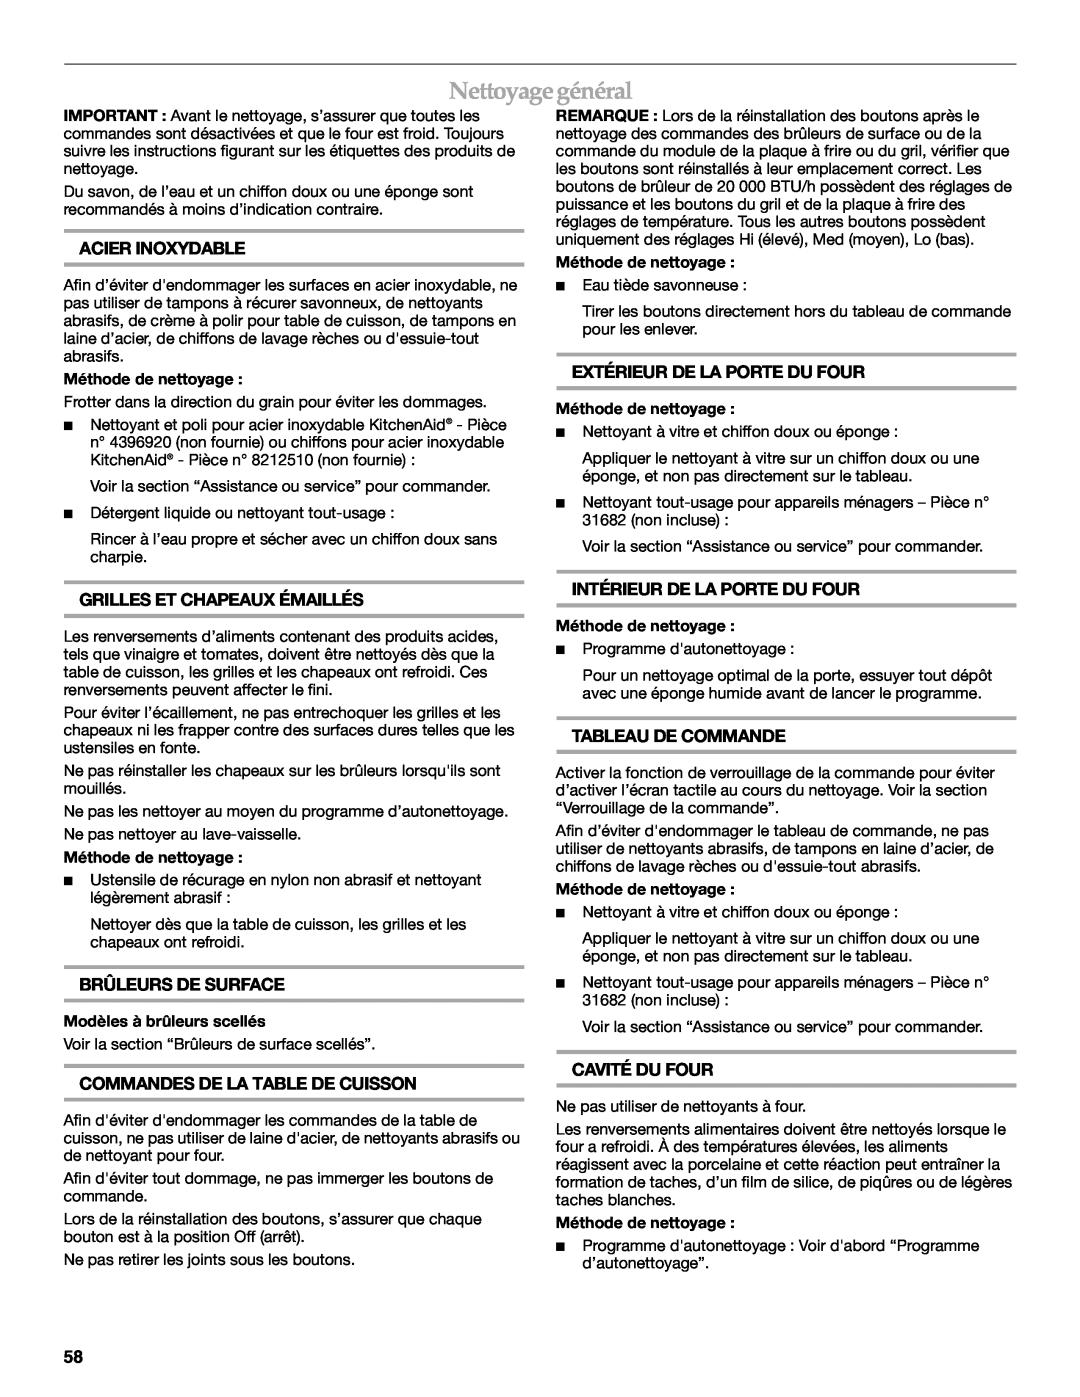 KitchenAid KDRS407 manual Nettoyage général, Acier Inoxydable, Extérieur De La Porte Du Four, Grilles Et Chapeaux Émaillés 